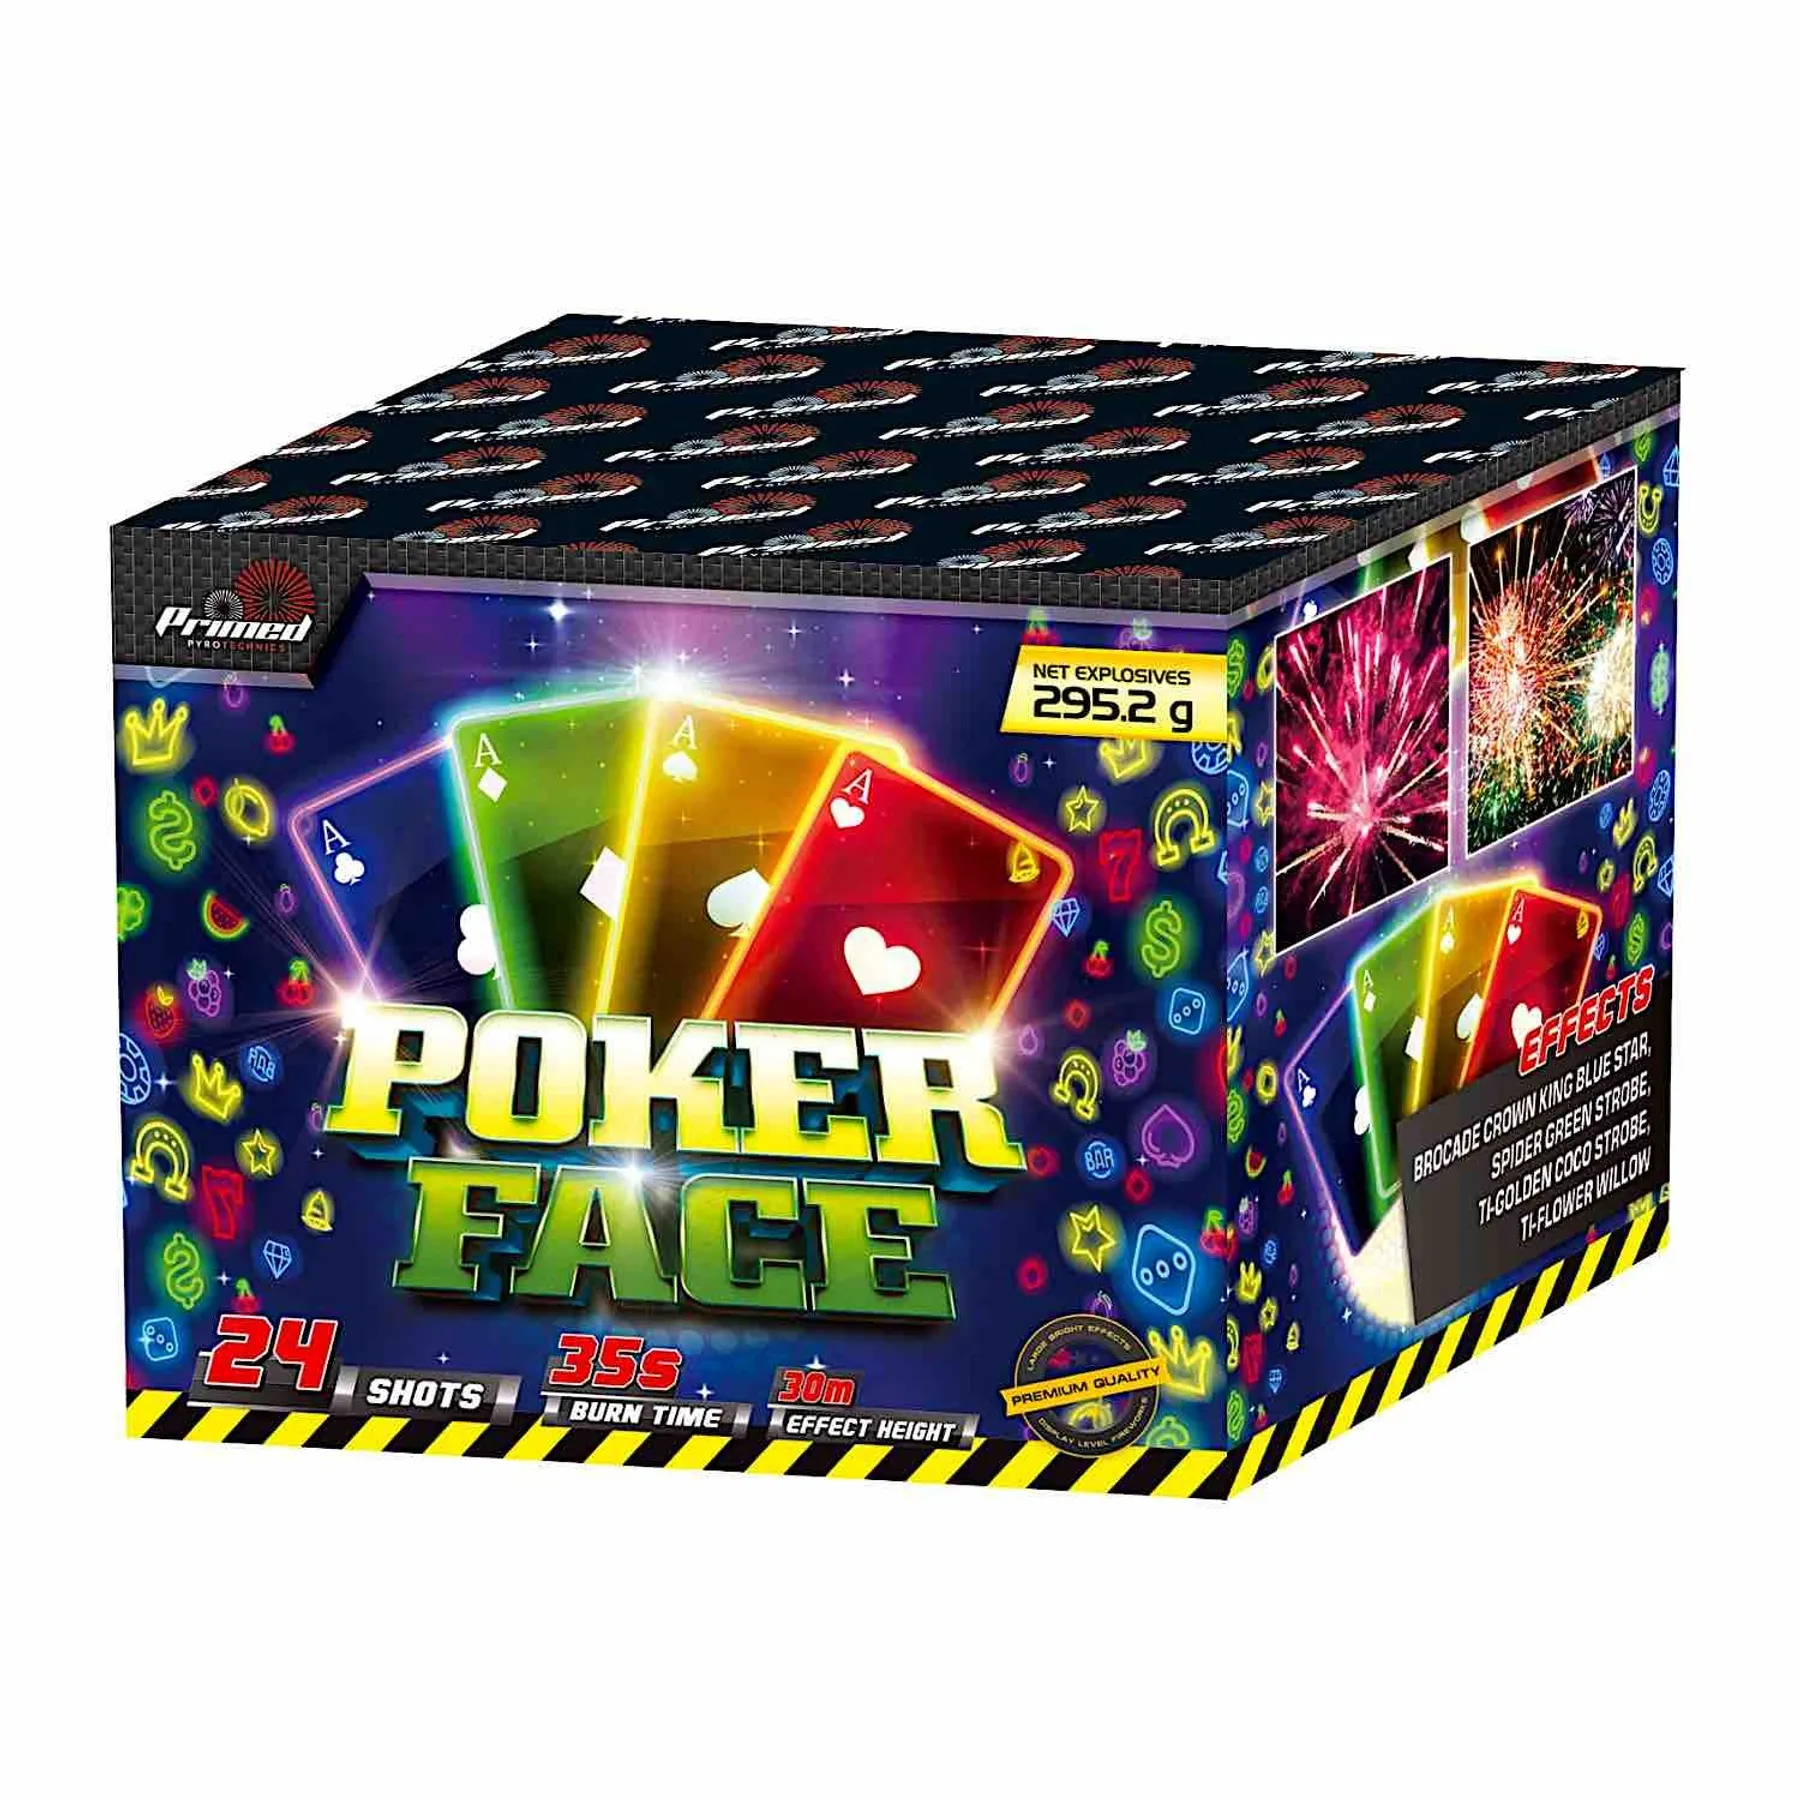 Poker Face Primed Fireworks Manchester